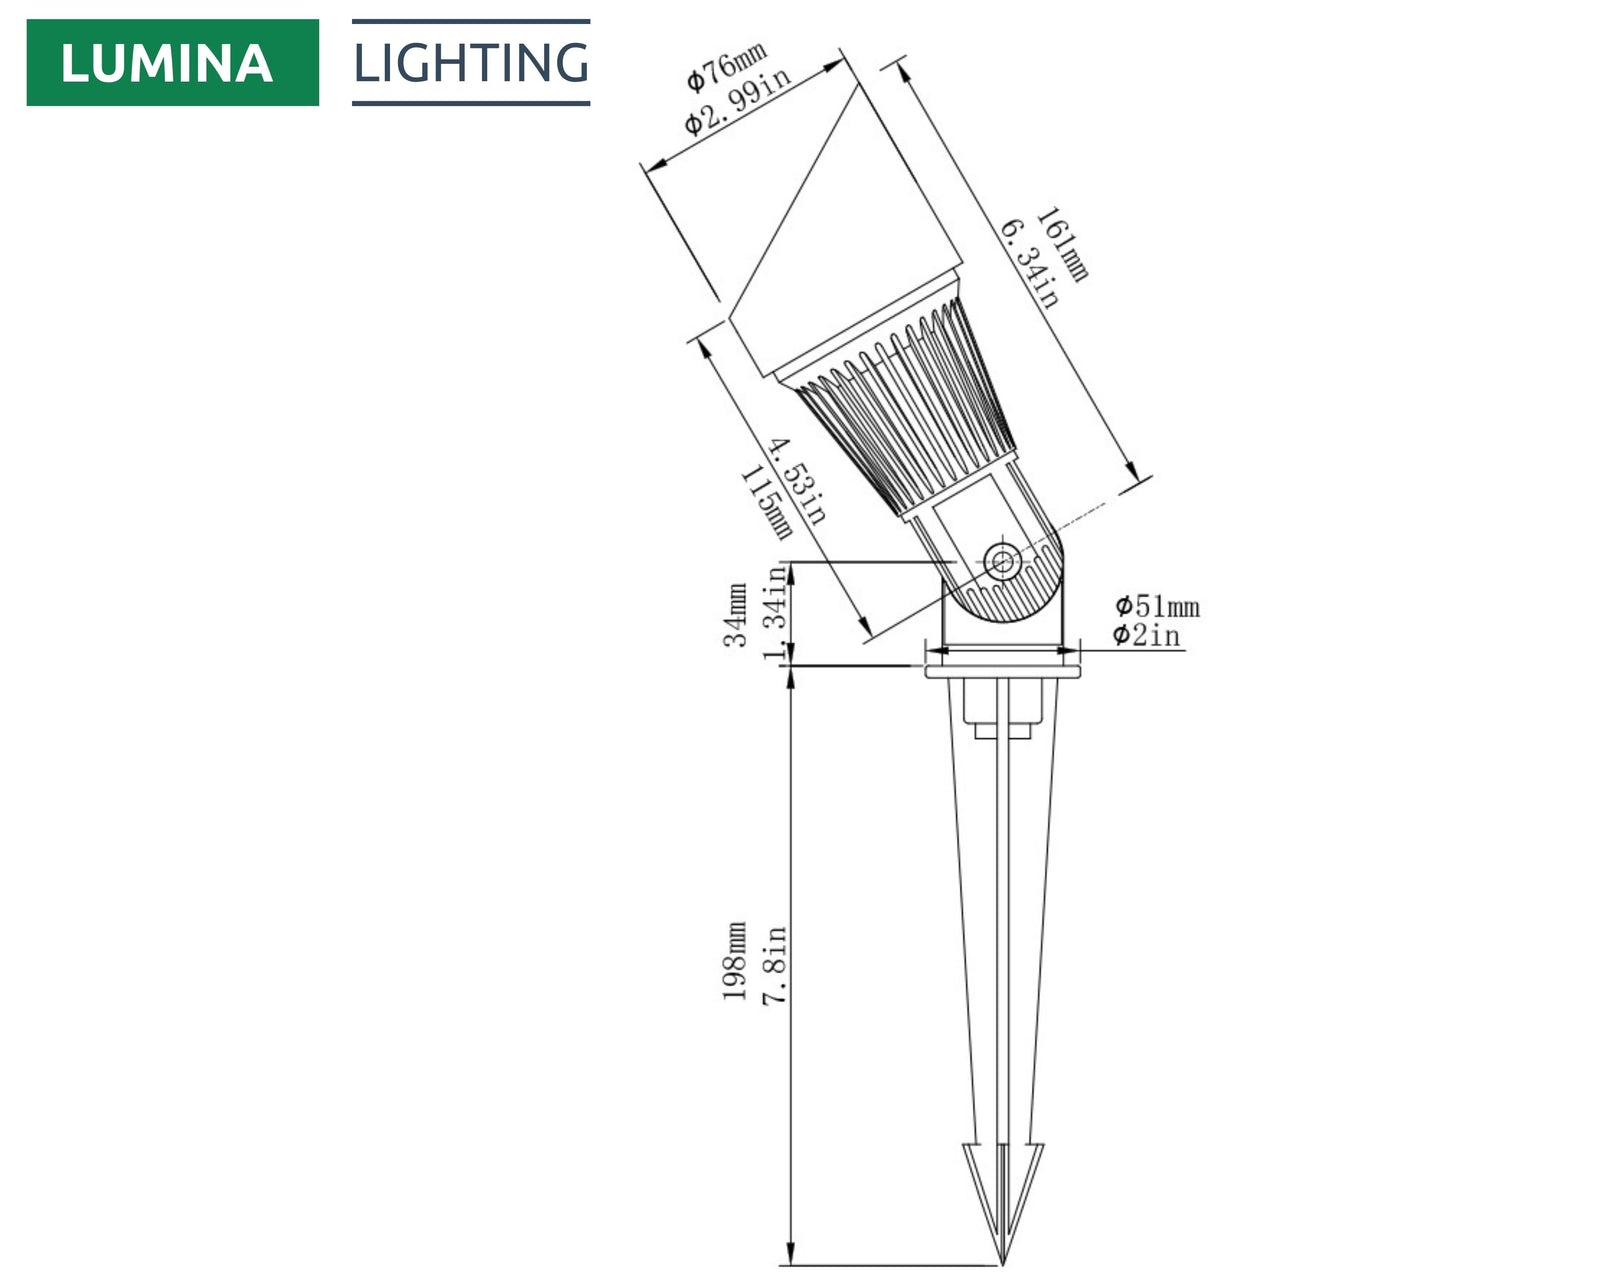 Lumina Lighting® 5W Landscape Spotlights | Low Voltage Landscape Lighting Lights - 12V 3000K | Replaceable MR16 LED Bulb (Black, 2-Pack)